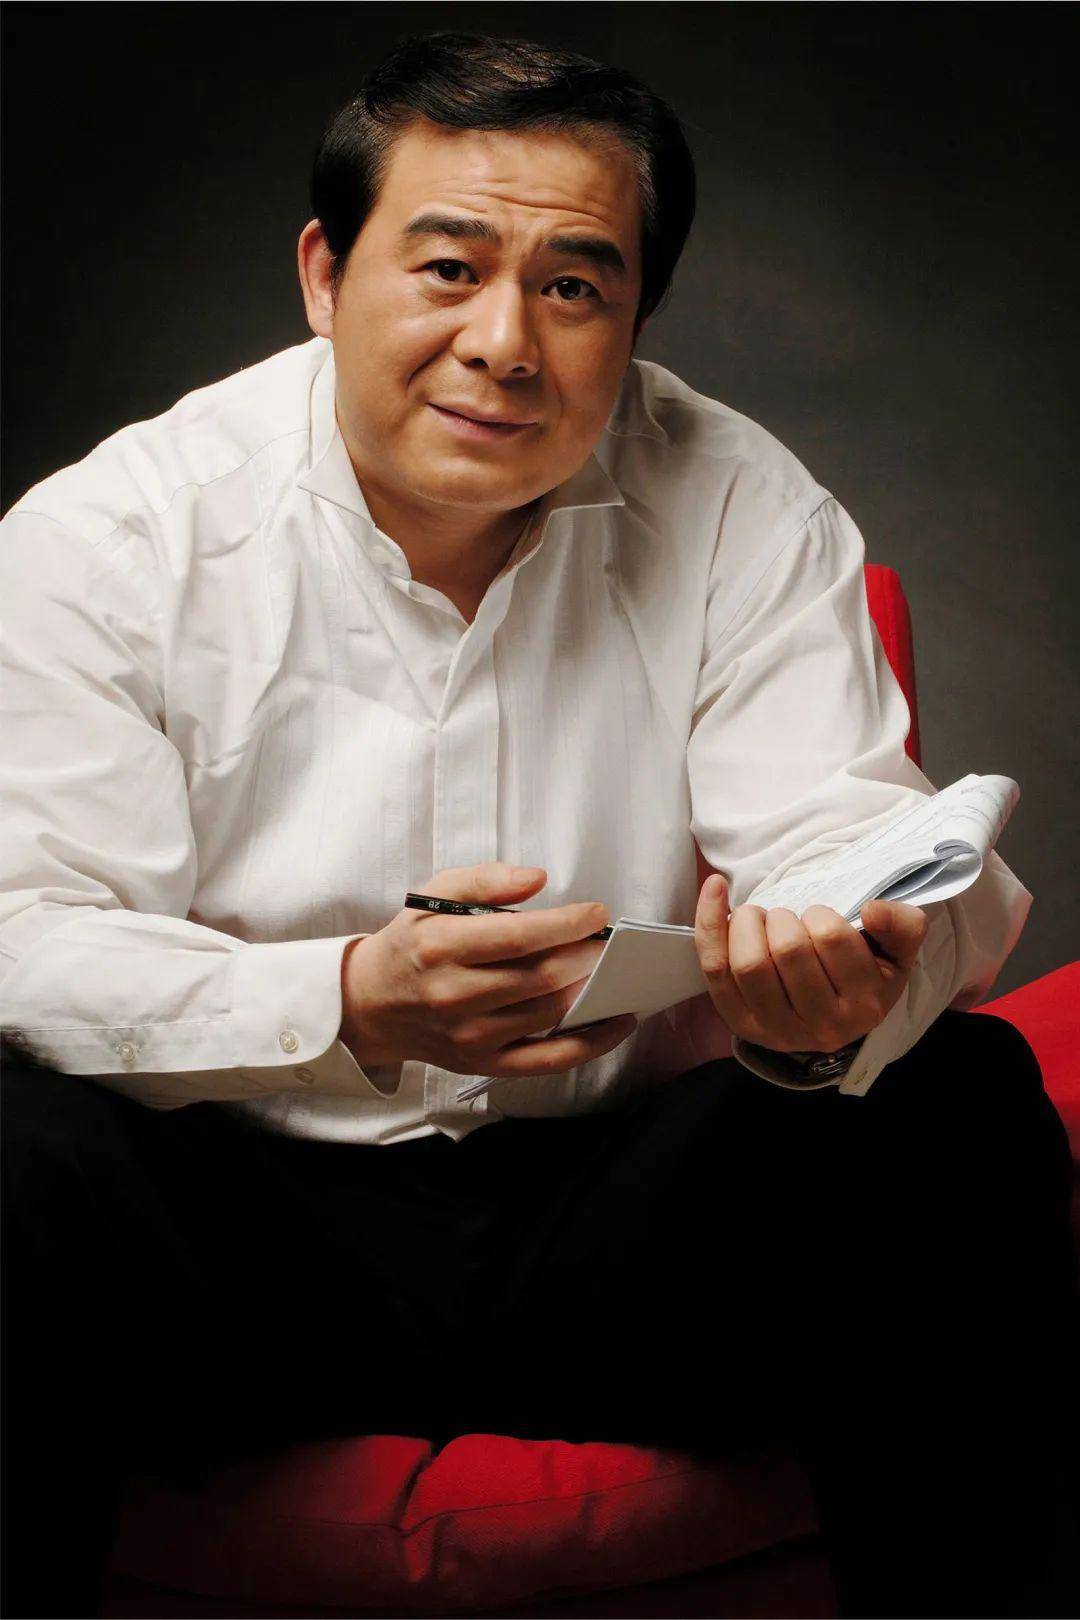 10:00 俞 峰 中央音乐学院院长,中国指挥学会会长,曾任中央歌剧院院长